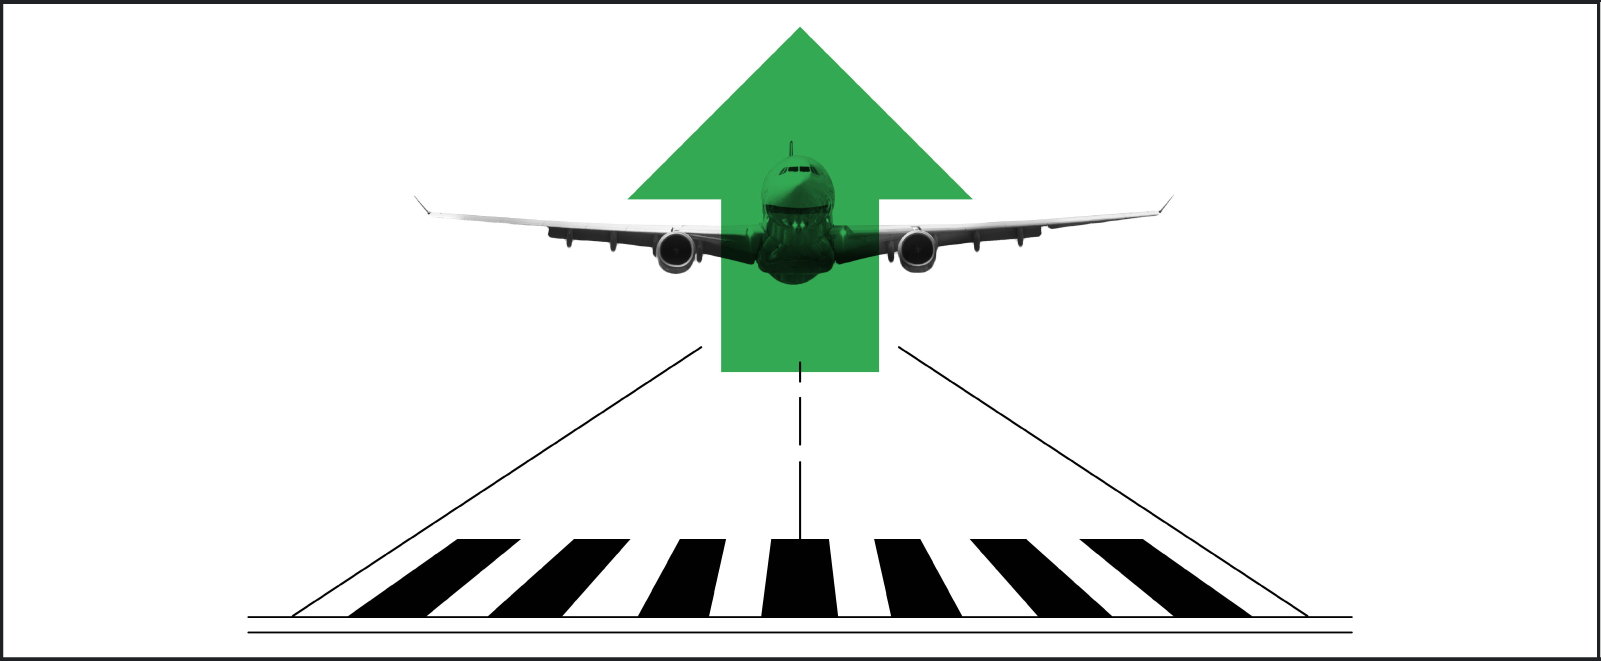 Une illustration en noir et blanc montre un avion en train de décoller sur la piste. Un dessin de flèche verte pointant vers le haut est superposé sur l'appareil.